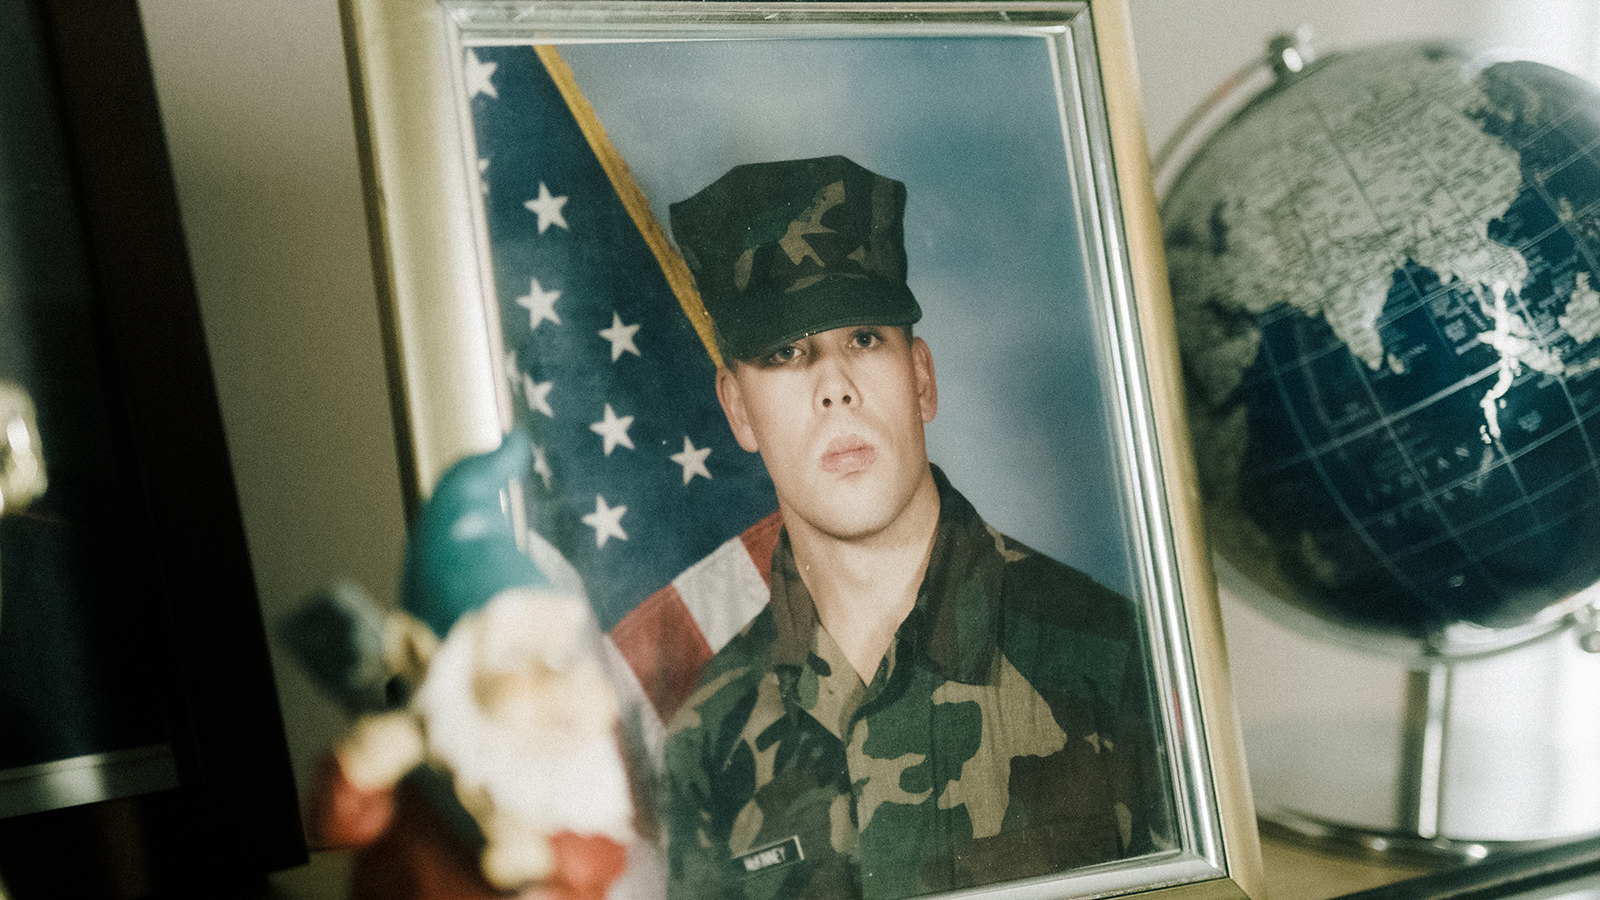 Richard "Mac" McKinney during his service as a U.S. Marine. Photo by Karl Schroder